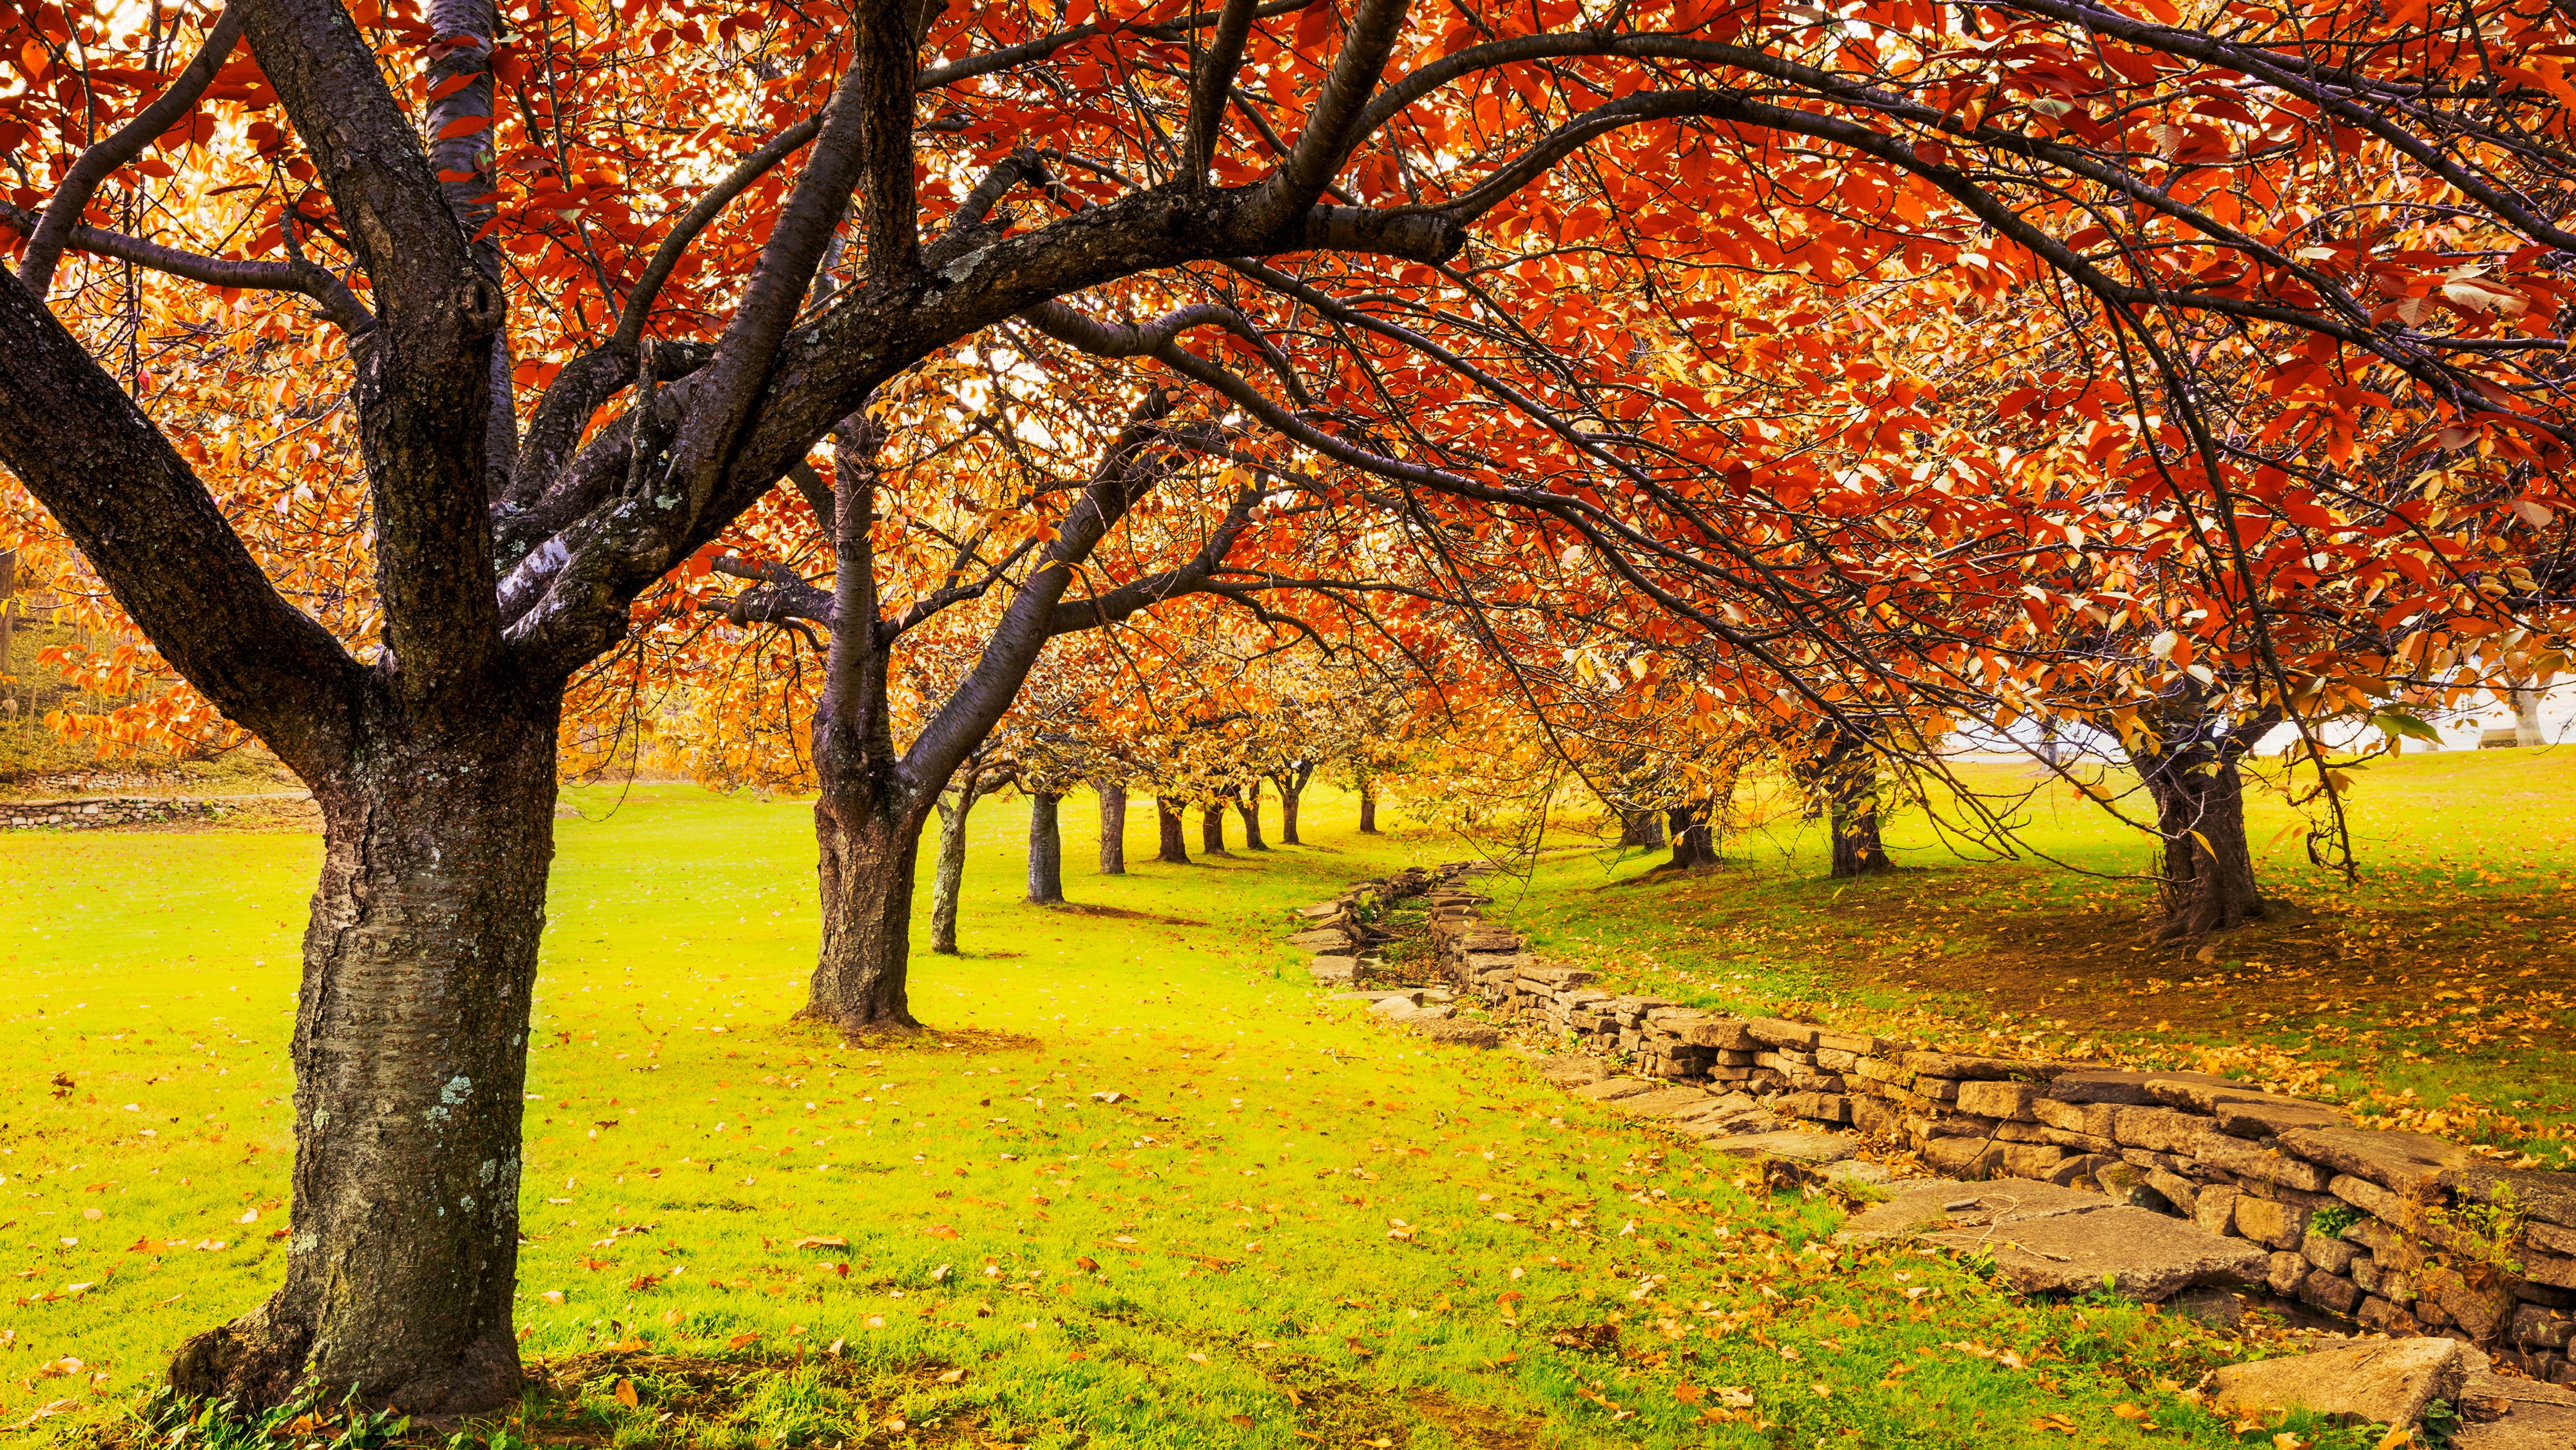 Mùa thu là mùa của sự thi vị, sự đổi màu của thiên nhiên. Hình ảnh về những cánh cây đổi màu tuyệt đẹp, những cơn gió se lạnh, những chiếc lá rơi về đất sẽ đem lại cho bạn cảm giác ấm áp và thư giãn.